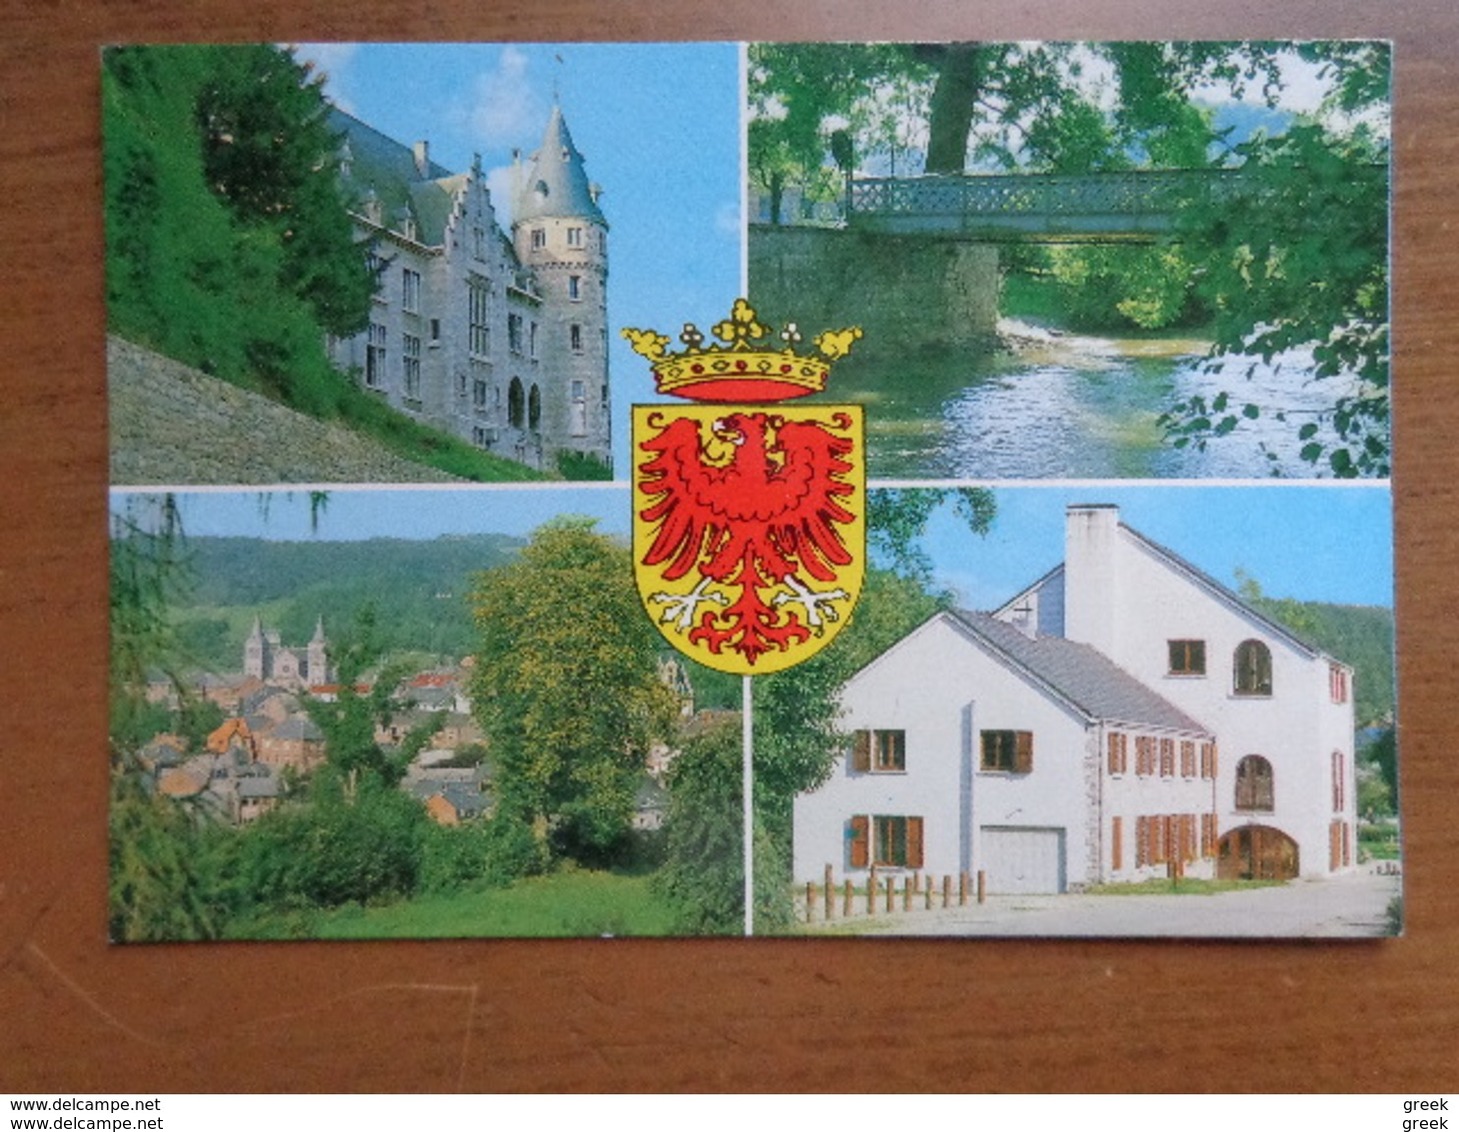 Doos postkaarten (3kg156) Verschillende landen en thema's - zie enkele foto's